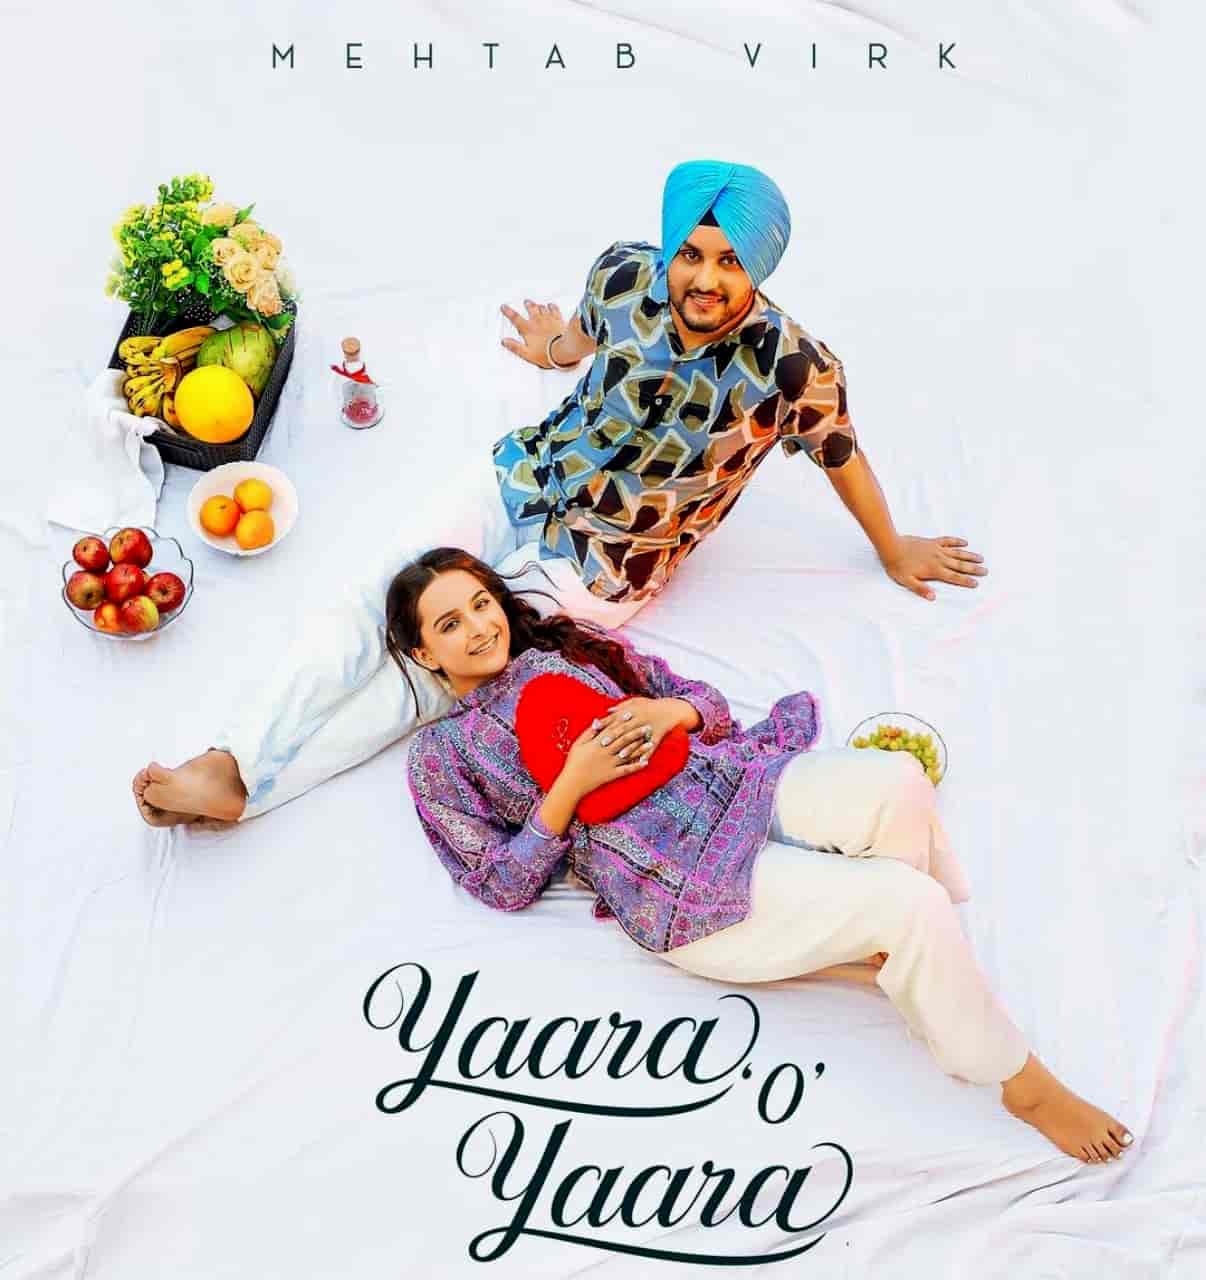 Yaara O Yaara Punjabi Song Image Features Mehtab Virk and Sruishty Mann